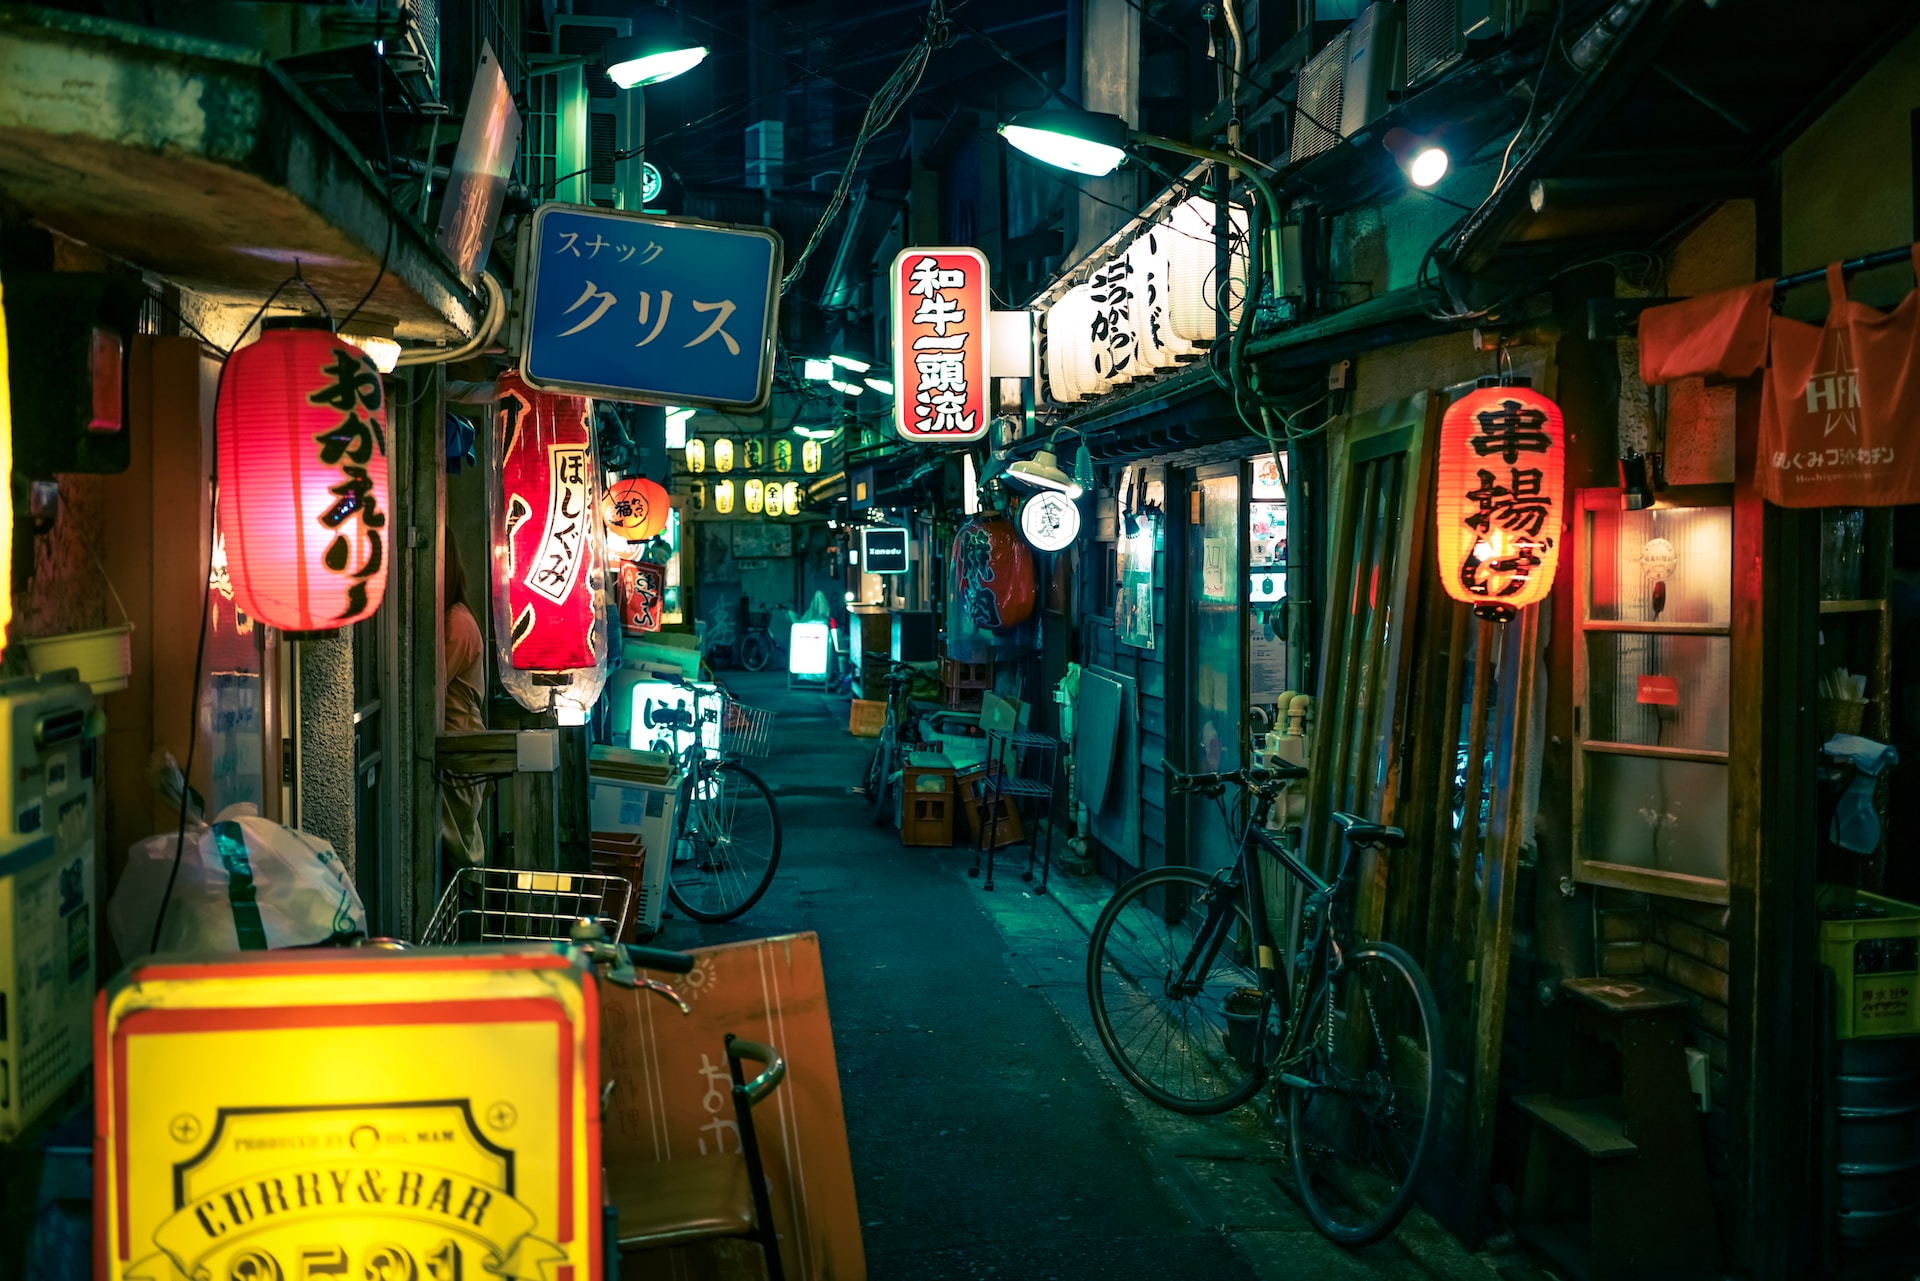 small back alleys of Sangenjaya, Tokyo